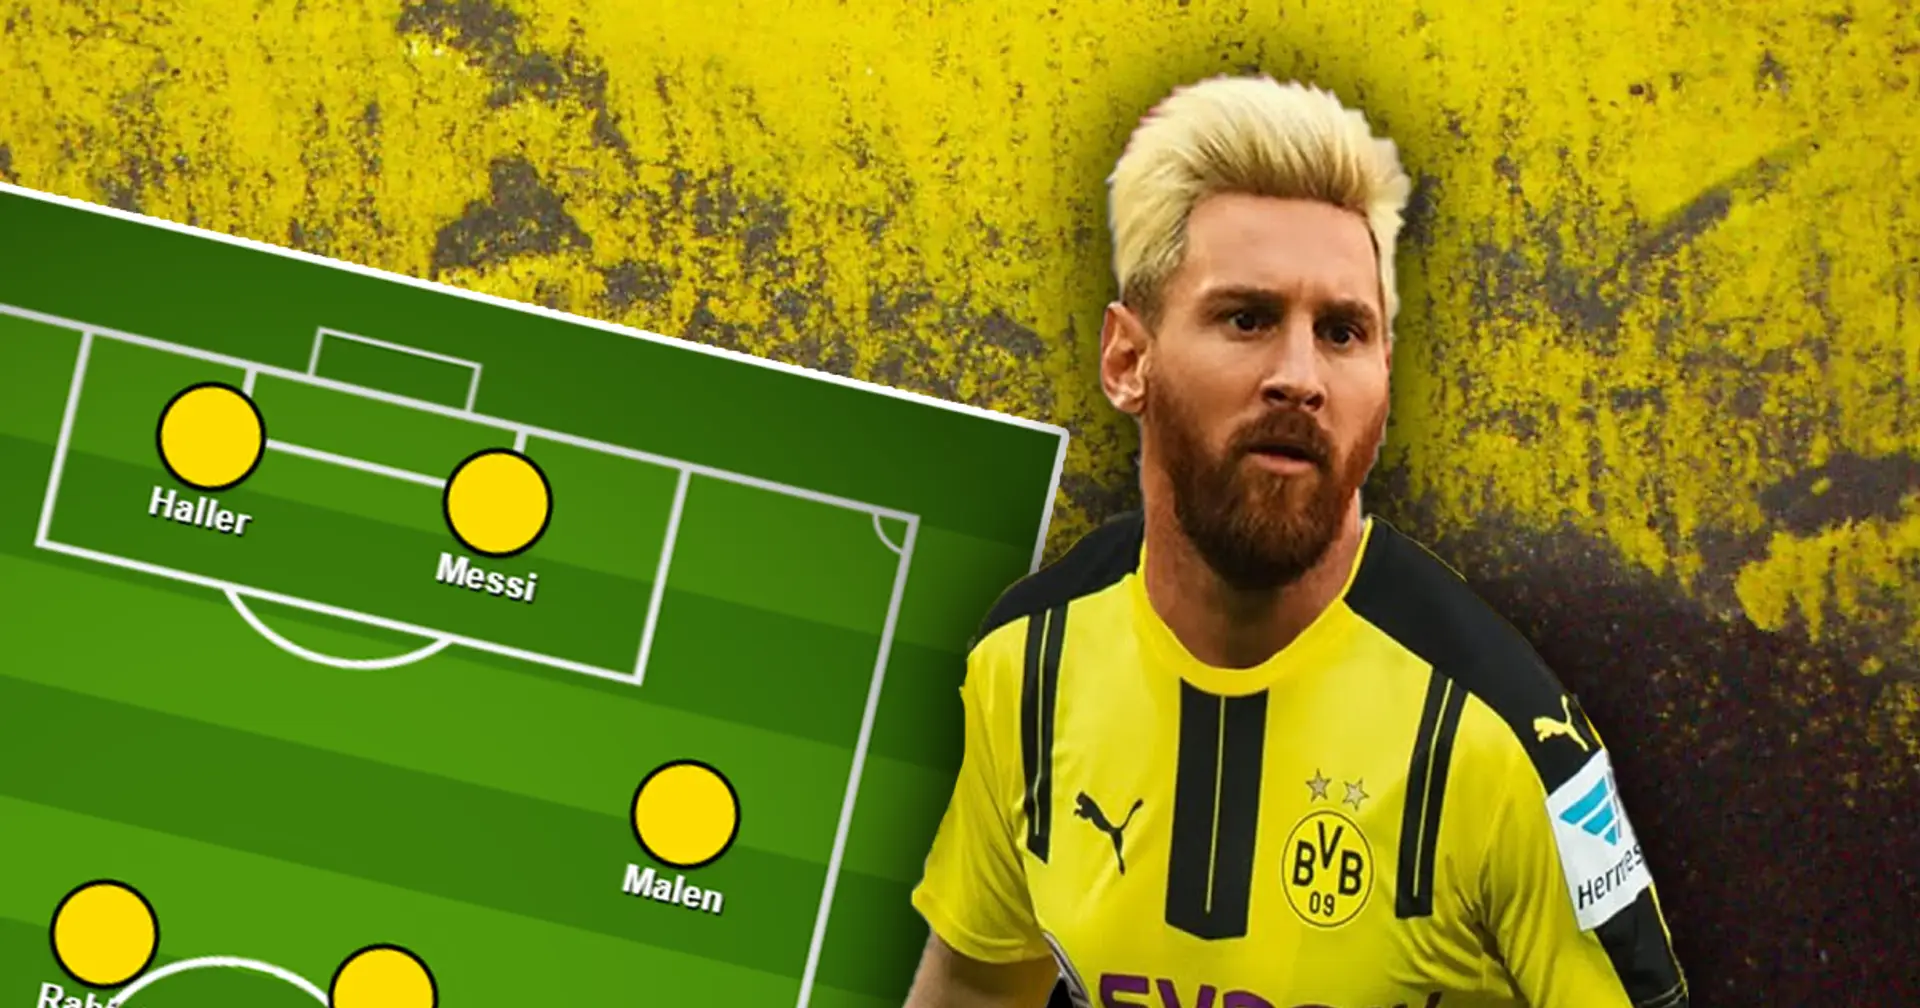 Wer sagt, dass Messi zum BVB nicht wechseln könnte? So könnte sich Borussia durch Free-Agent-Transfers verstärken